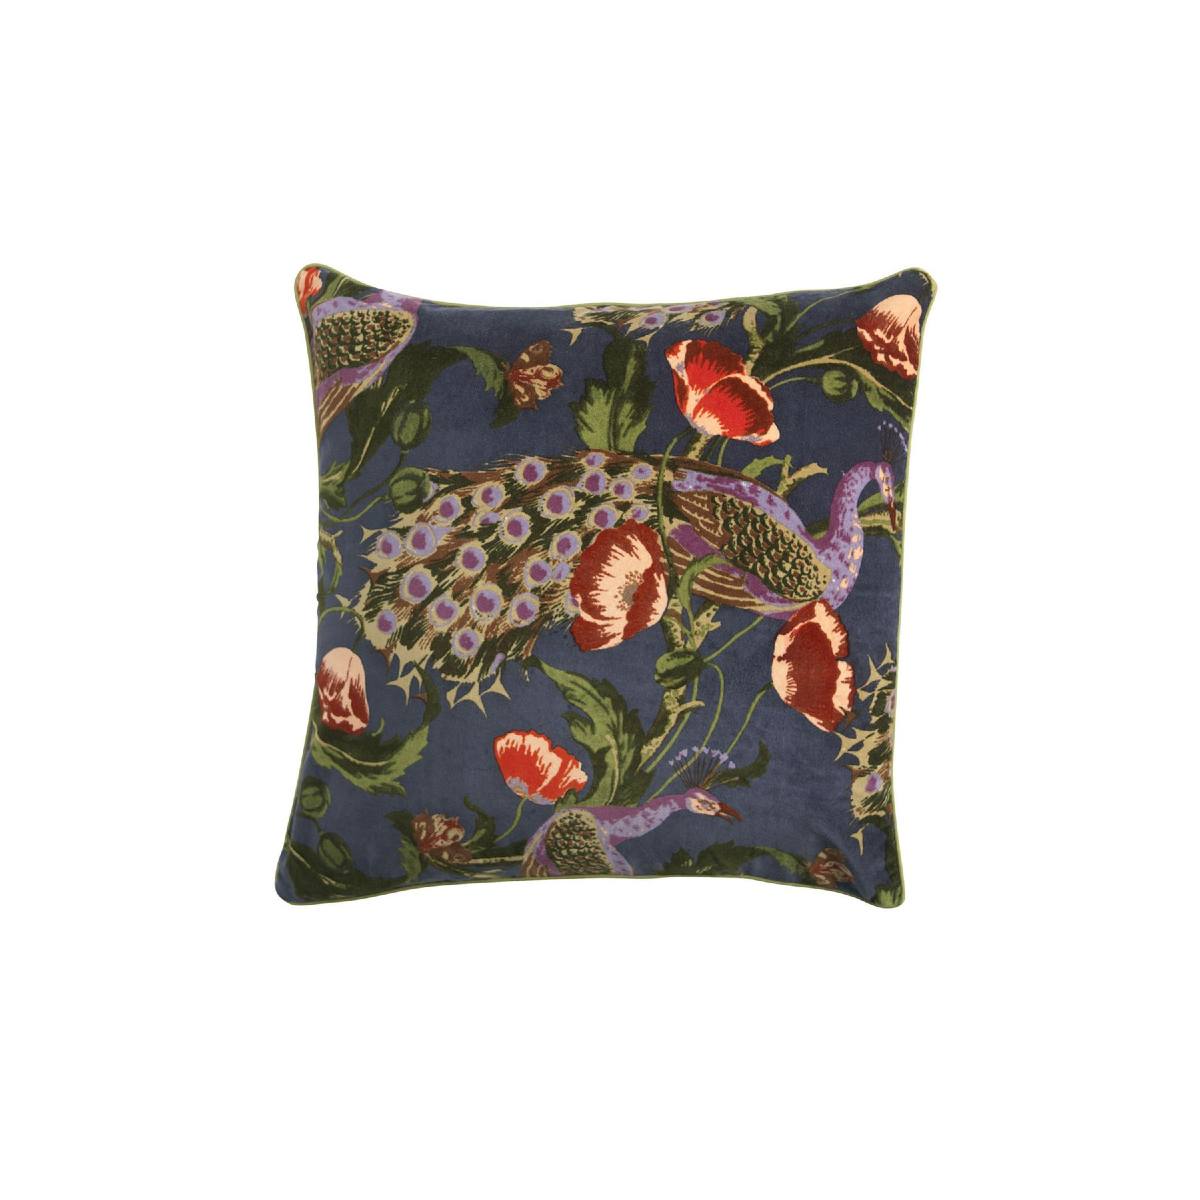 Velvet Poppies & Peacock Cushion Cover by One Hundred Stars 50cm x 50cm